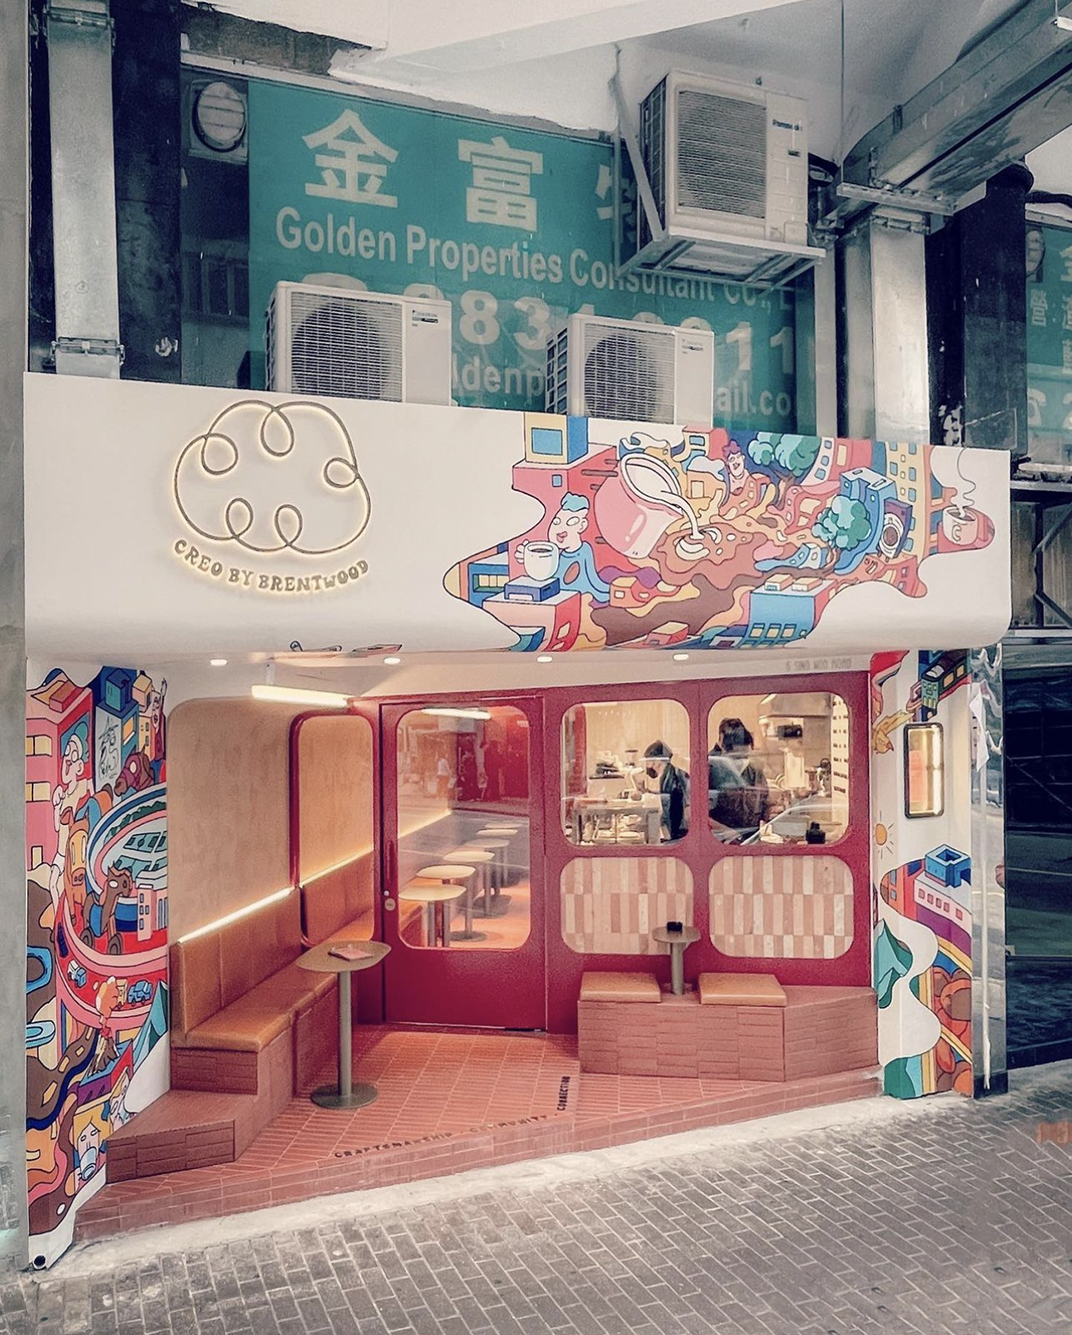 插画墙身cafe咖啡店Creo by Brentwood 香港 北京 上海 成都 武汉 杭州 广州 澳门 logo设计 vi设计 空间设计